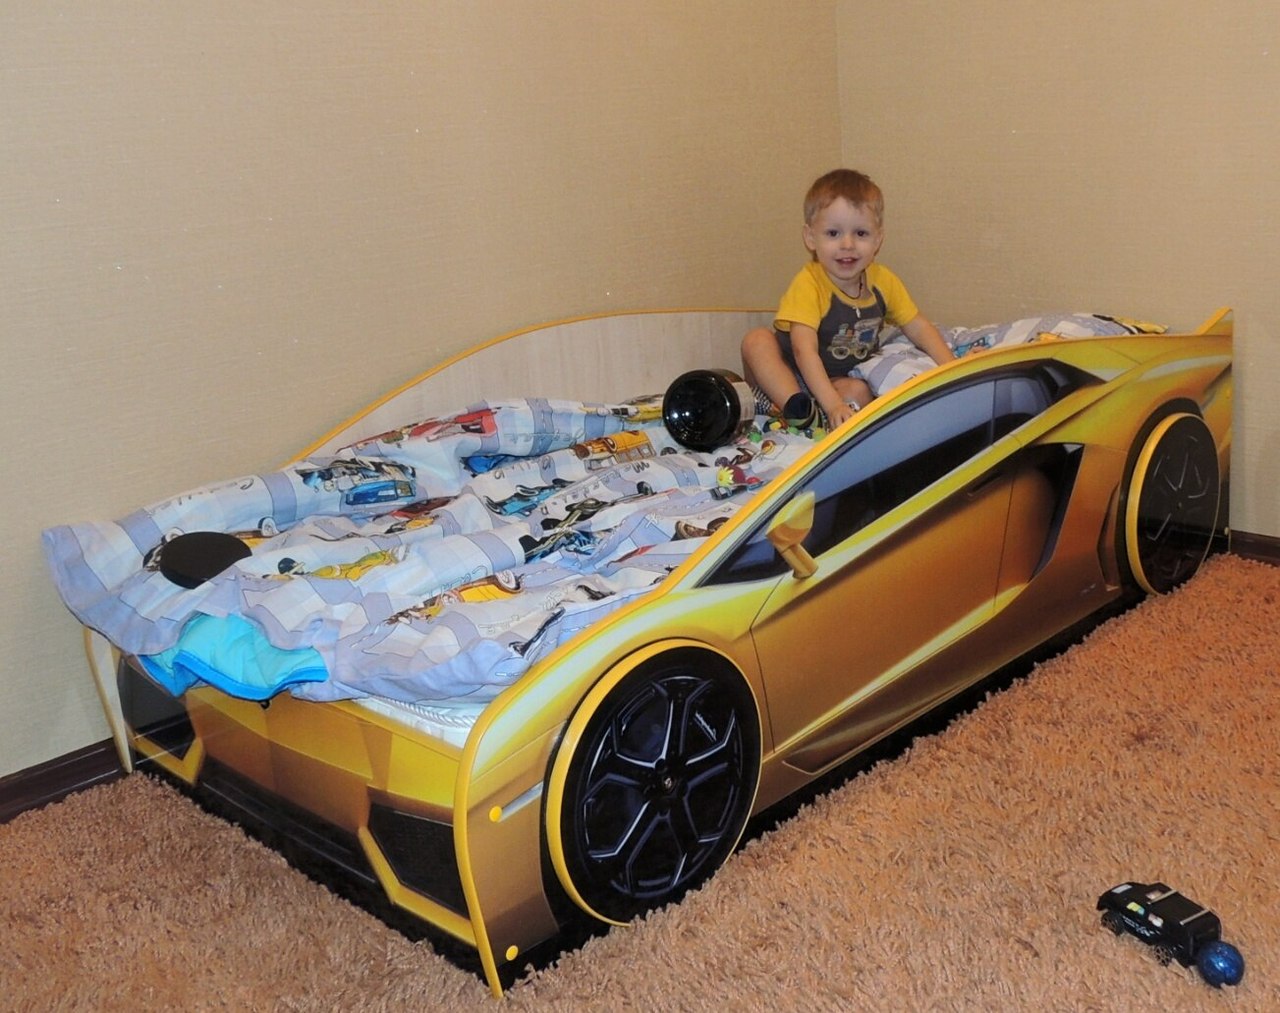 кровать машина желтого цвета